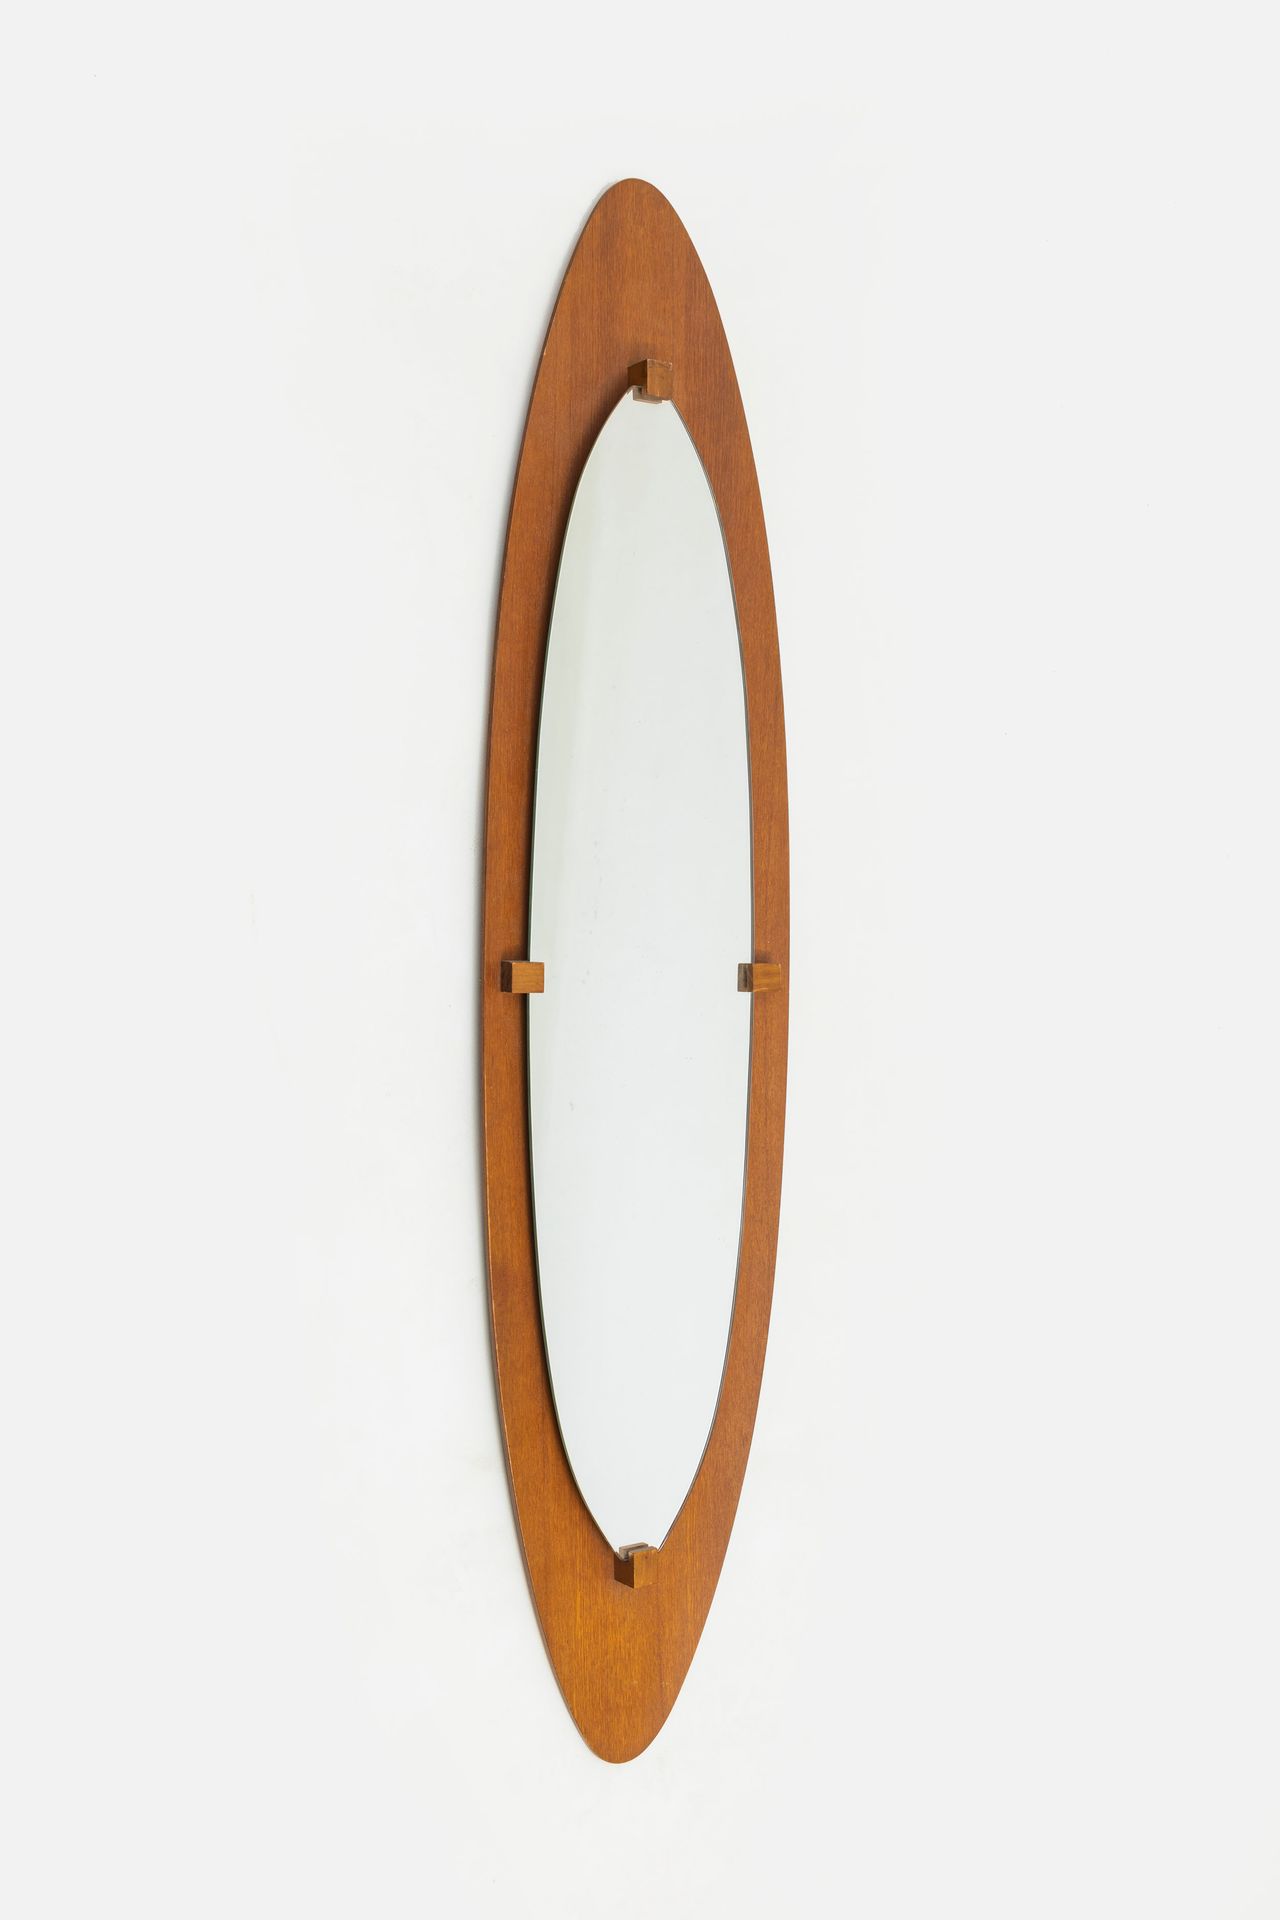 FRANCO CAMPO, CARLO GRAFFI Specchio. Compensato curvato impiallacciato in legno &hellip;